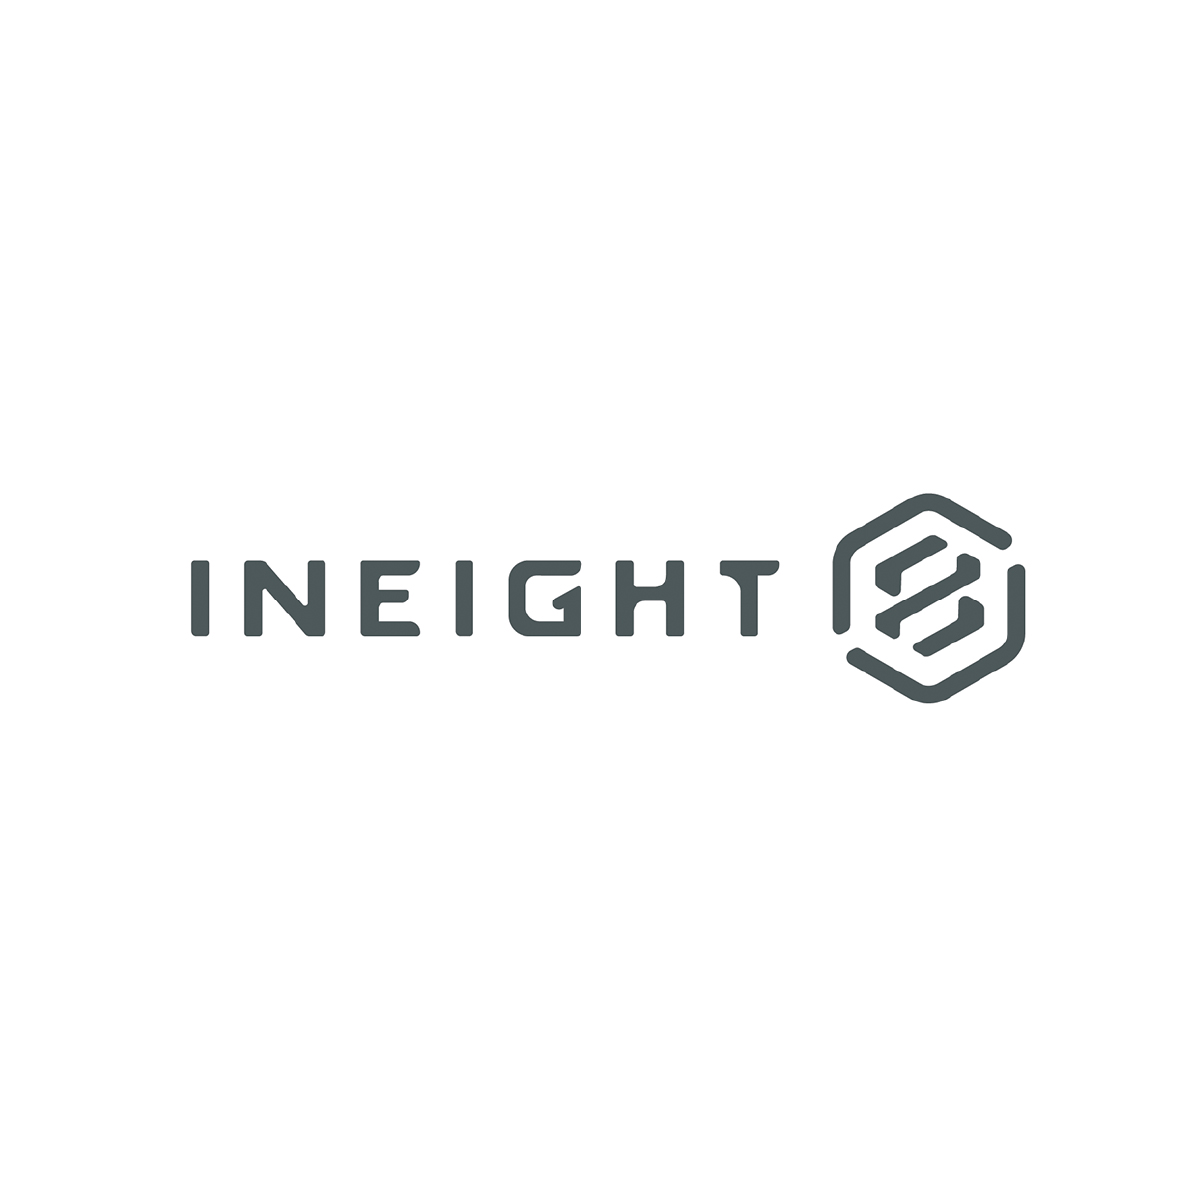 InEight logo.jpg